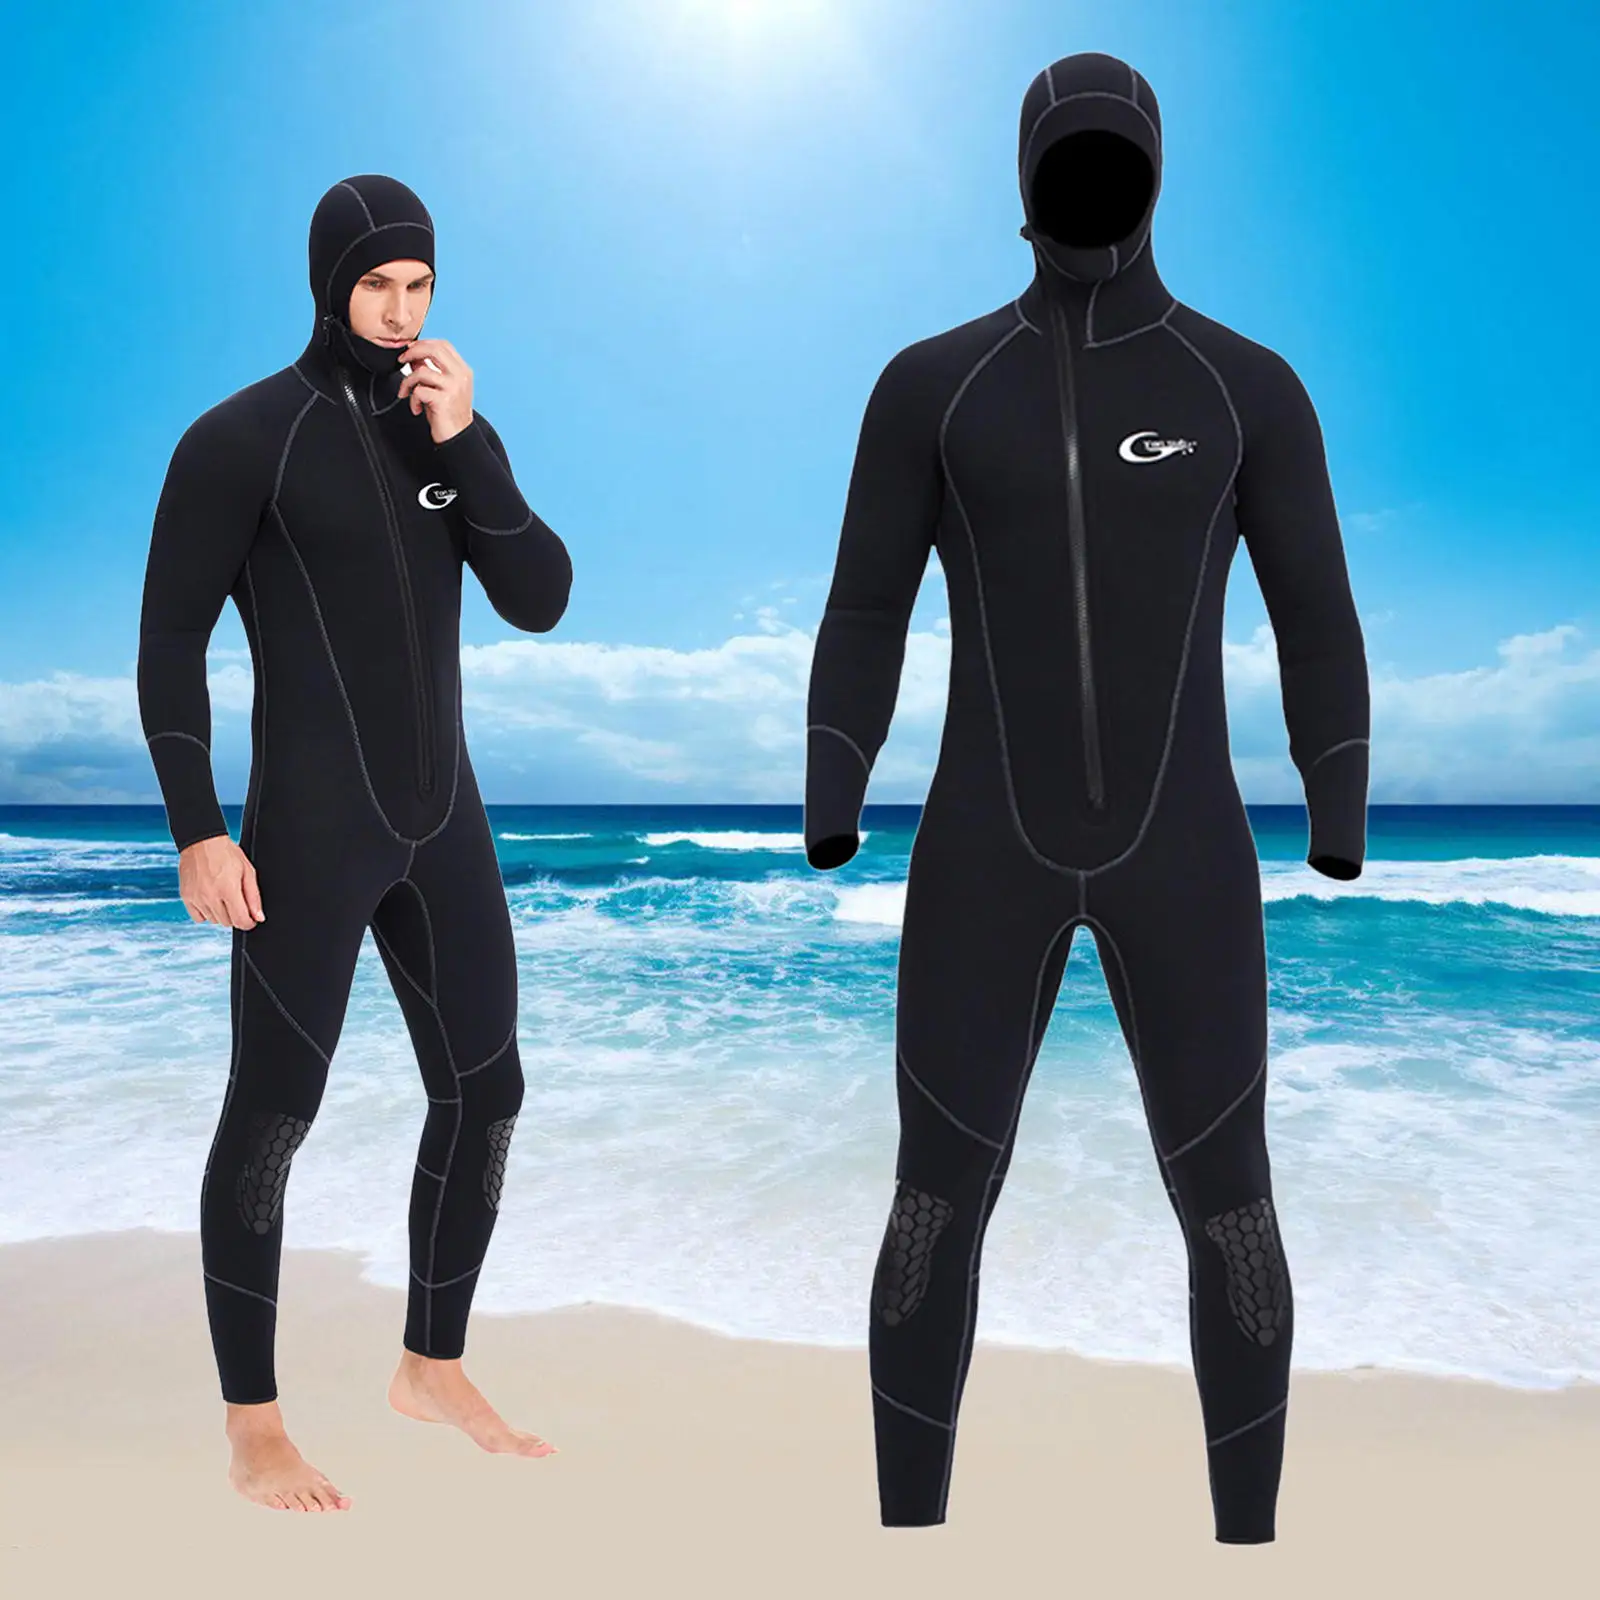 Surf MagiDeal Uomo 2mm Neoprene Muta Wetsuit Top per Nuoto Immersioni Subacquea Abbigliamento Sportiva con Zip 